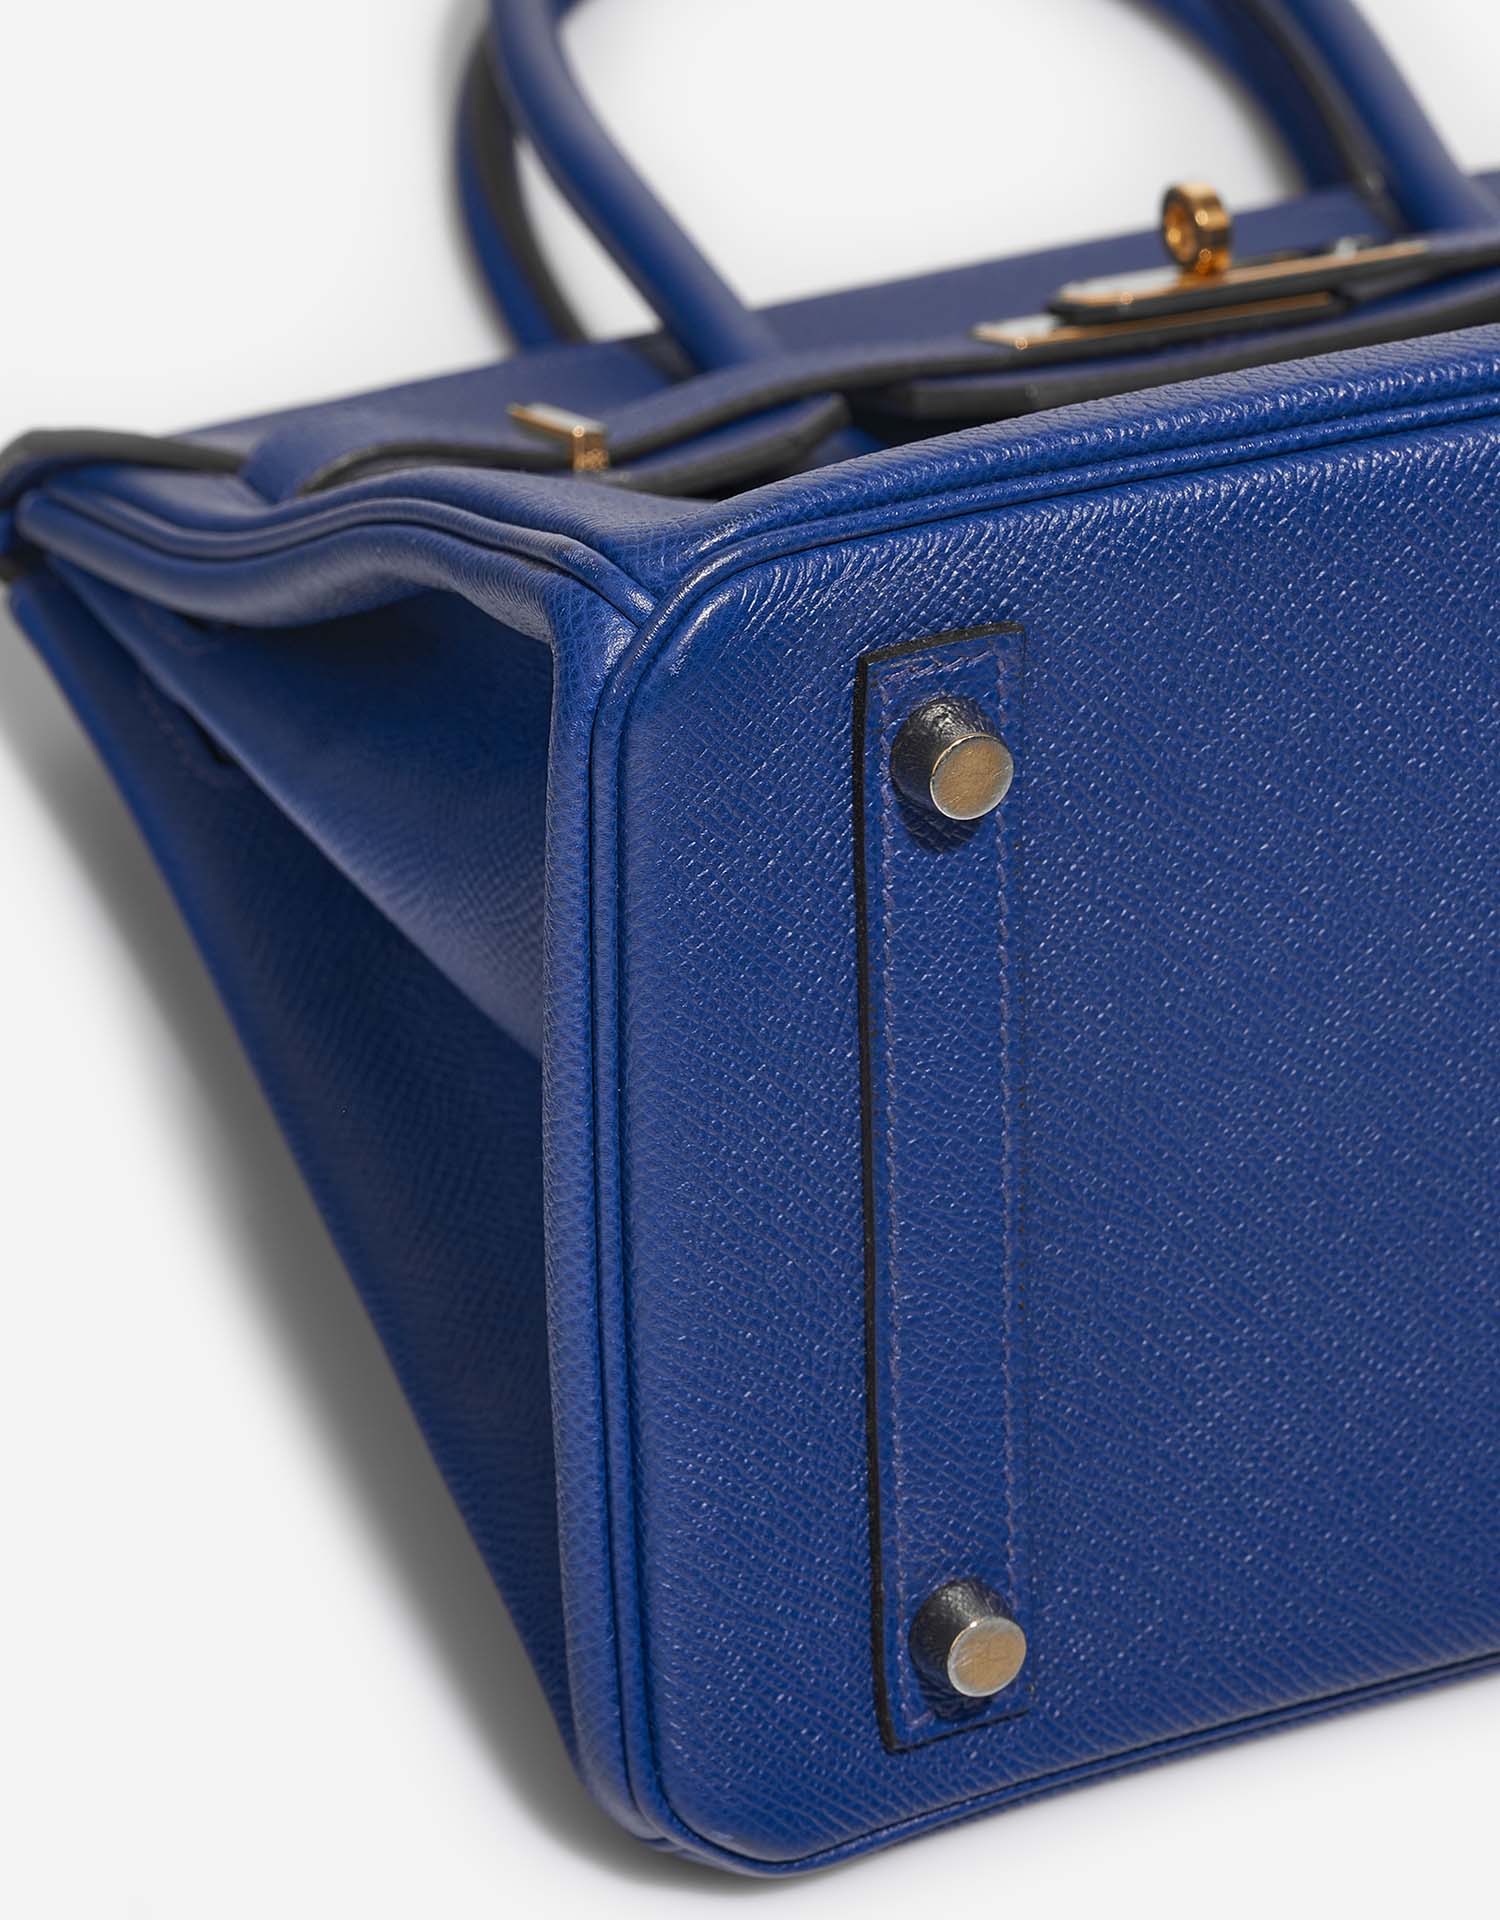 Hermès Birkin 30 BleuElectrique Gebrauchsspuren| Verkaufen Sie Ihre Designertasche auf Saclab.com